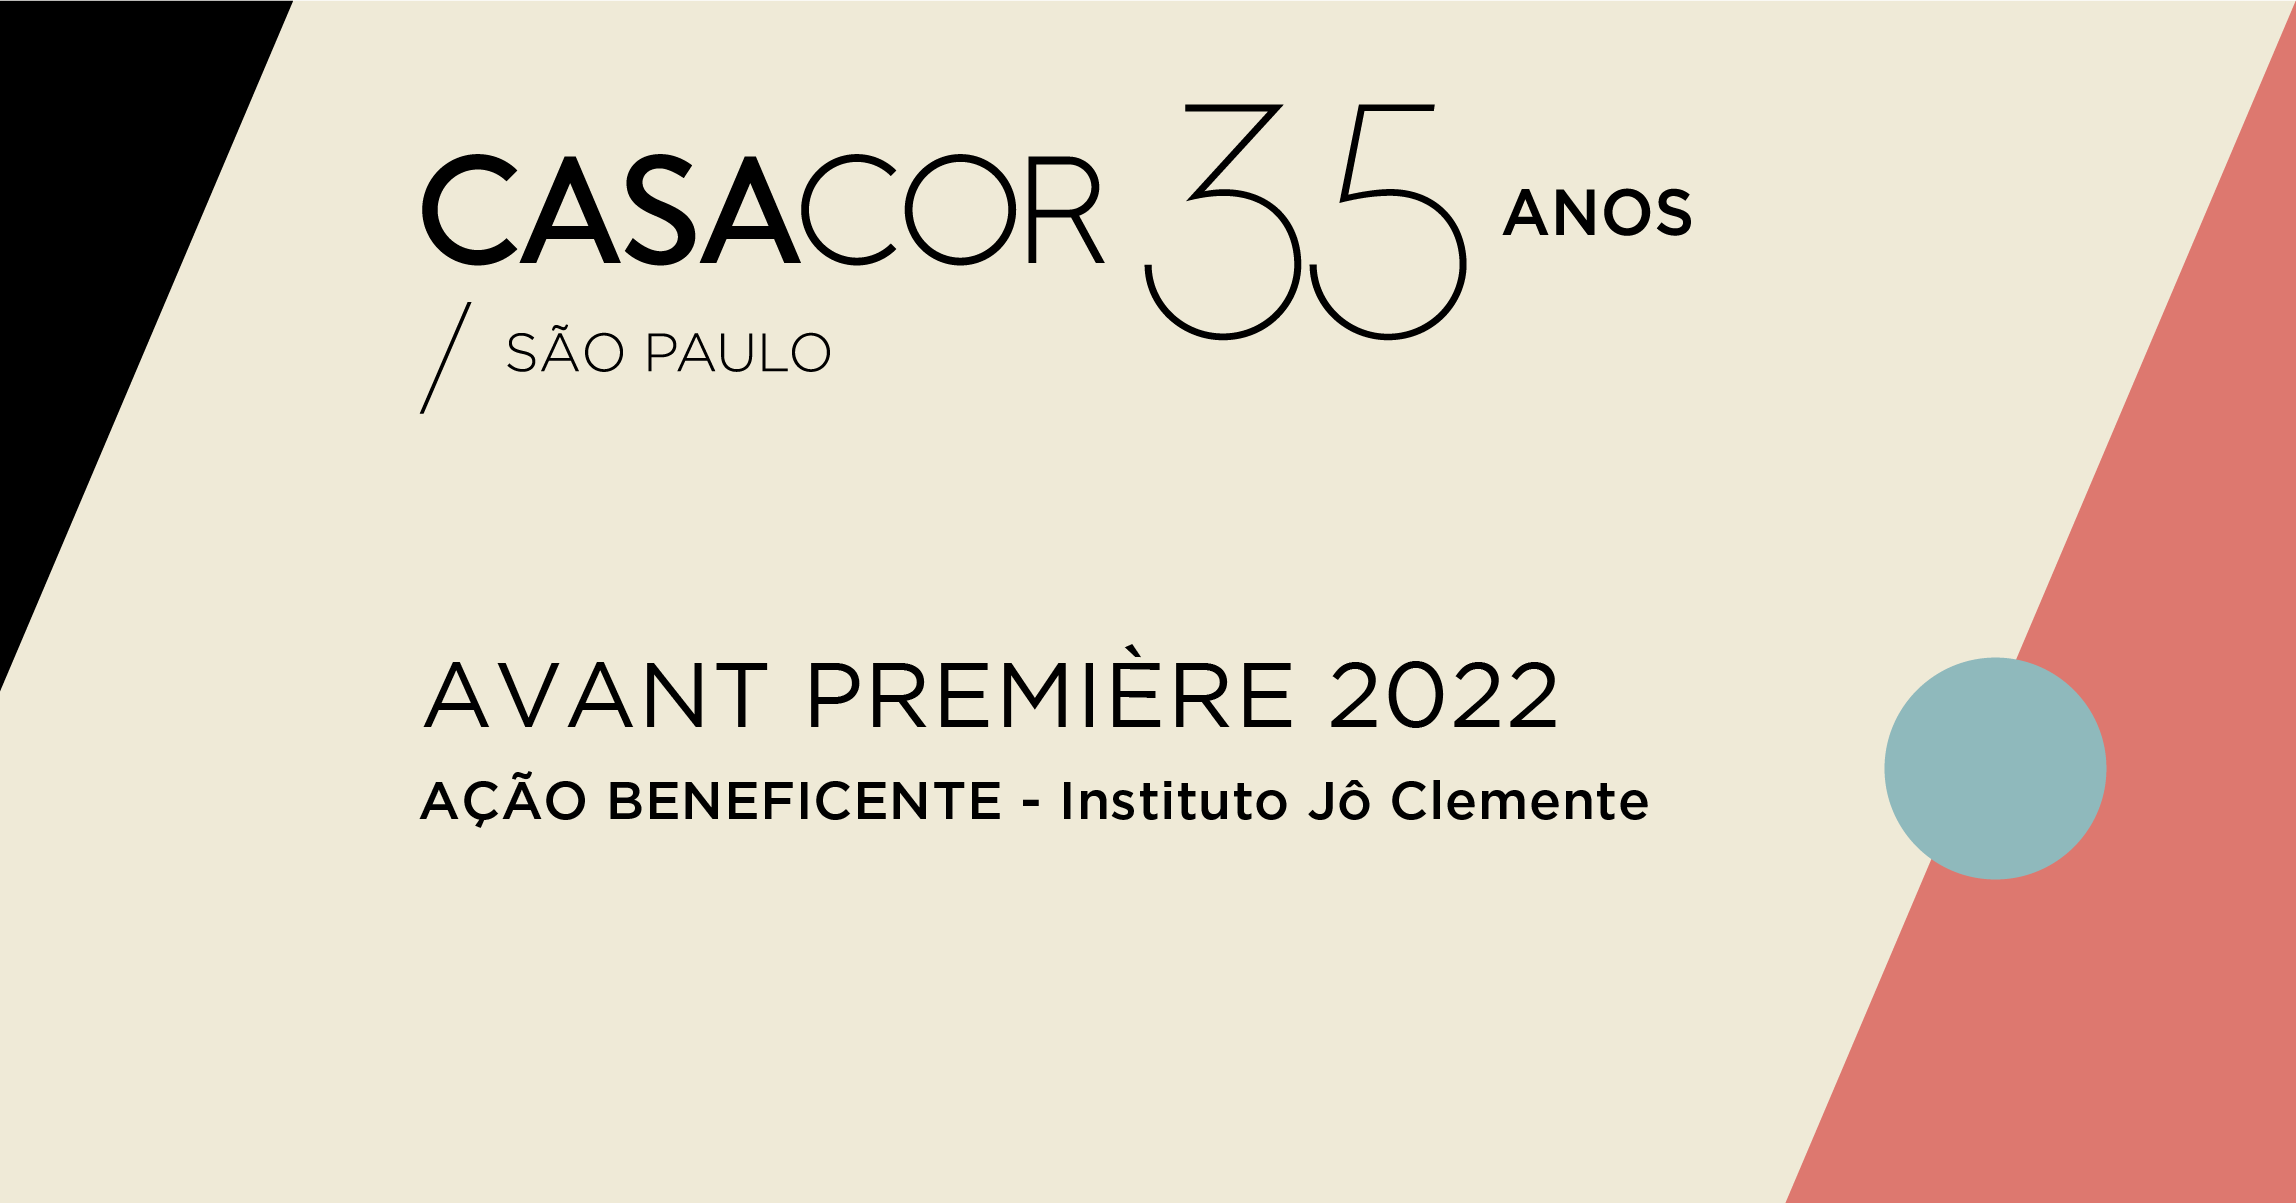 CASACOR São Paulo 2022 Avant Premiere